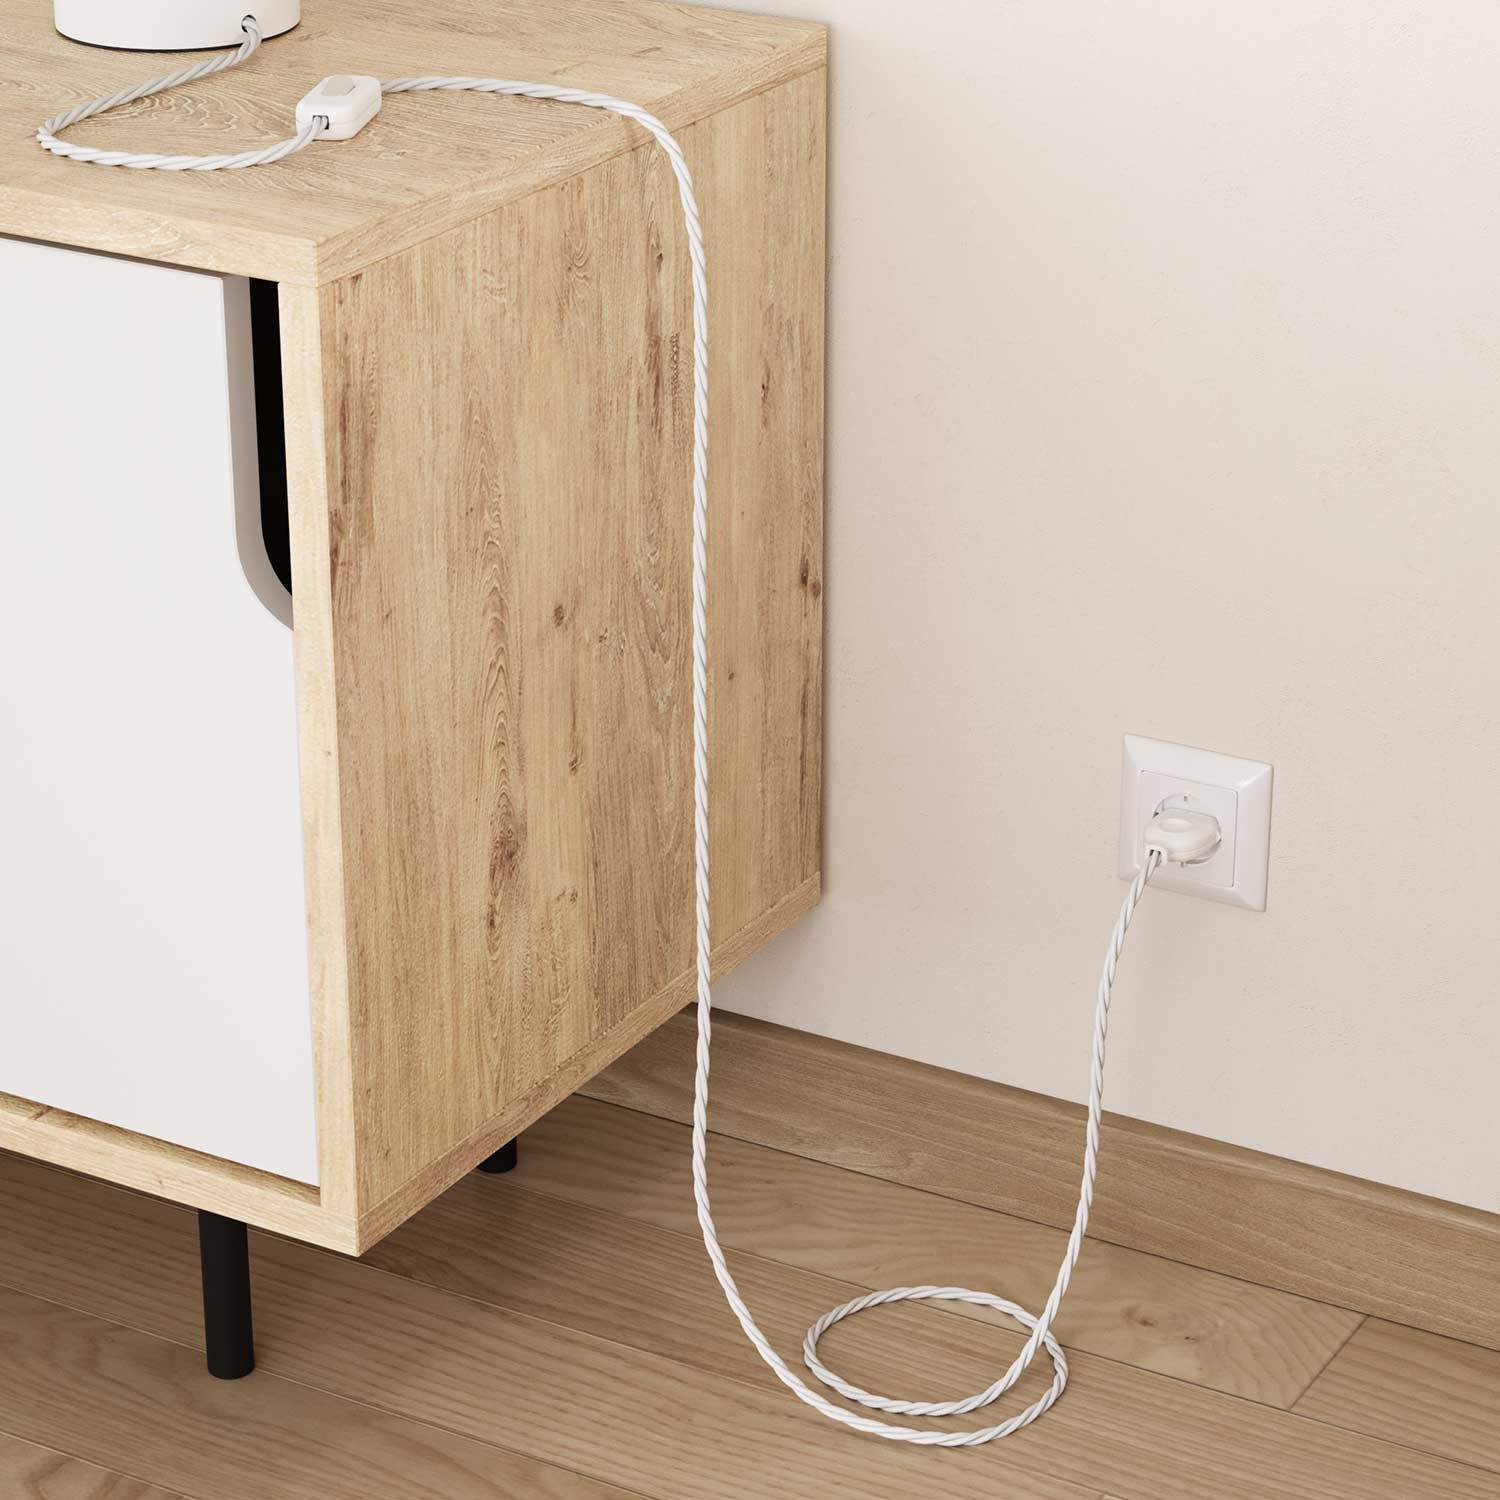 Splétaný hedvábný textilní elektrický kabel, TM01 Bílý